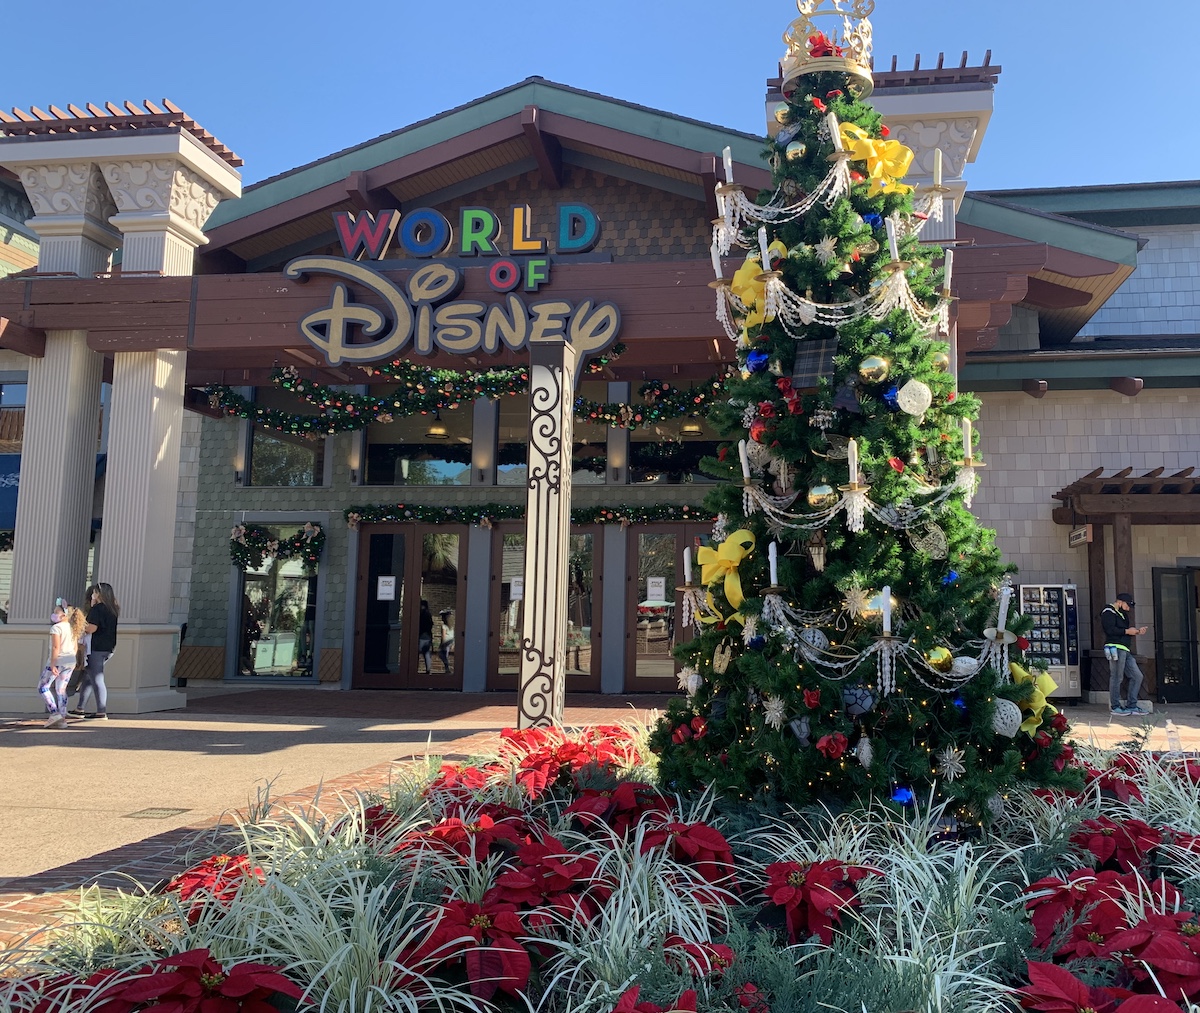 13 decoraciones navideñas que deben ver en Disney World esta temporada - 23